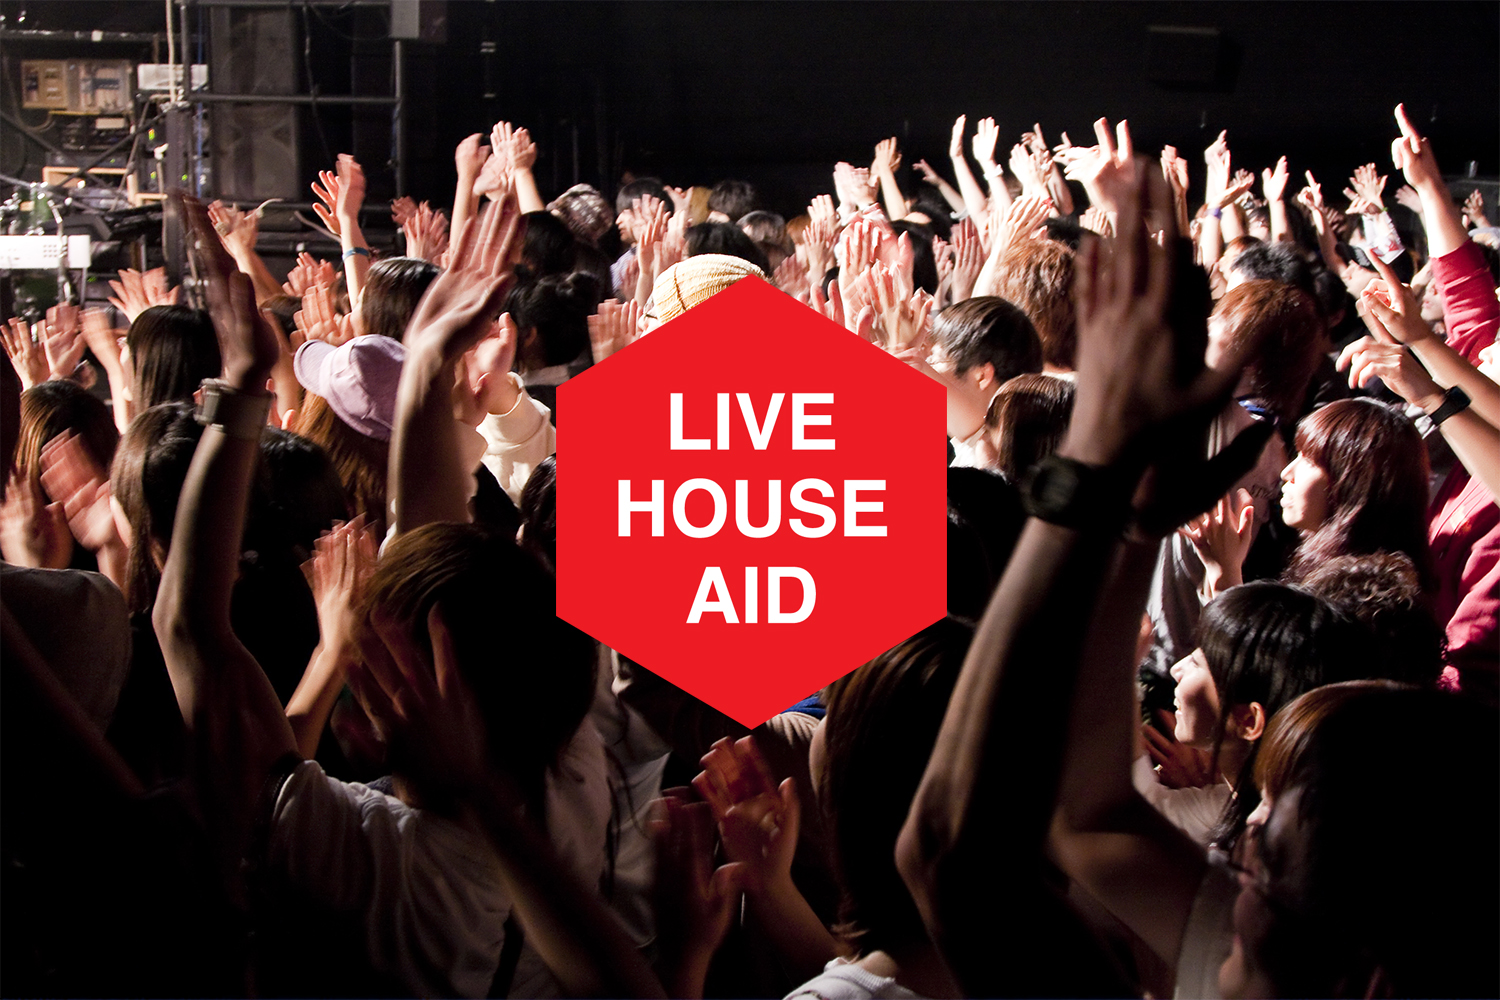 「札幌のライブハウスを守り、音楽文化を広める「LIVE HOUSE AID in SAPPORO」 ミュージシャン・村田知哉さんインタビュー」のアイキャッチ画像